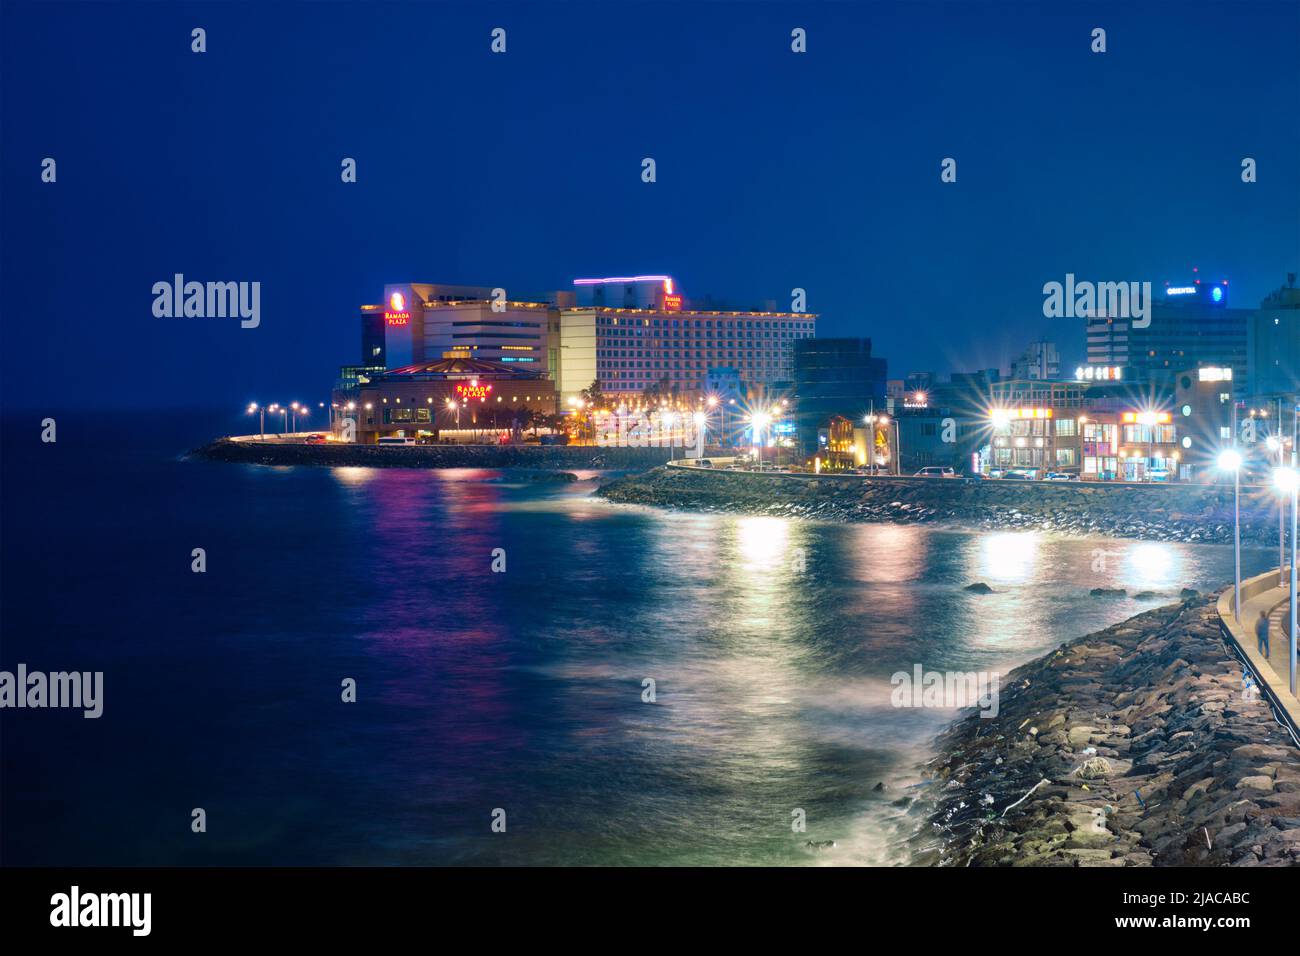 Ciudad turística de Jeju iluminada por la noche, isla de Jeju, Corea del Sur Foto de stock